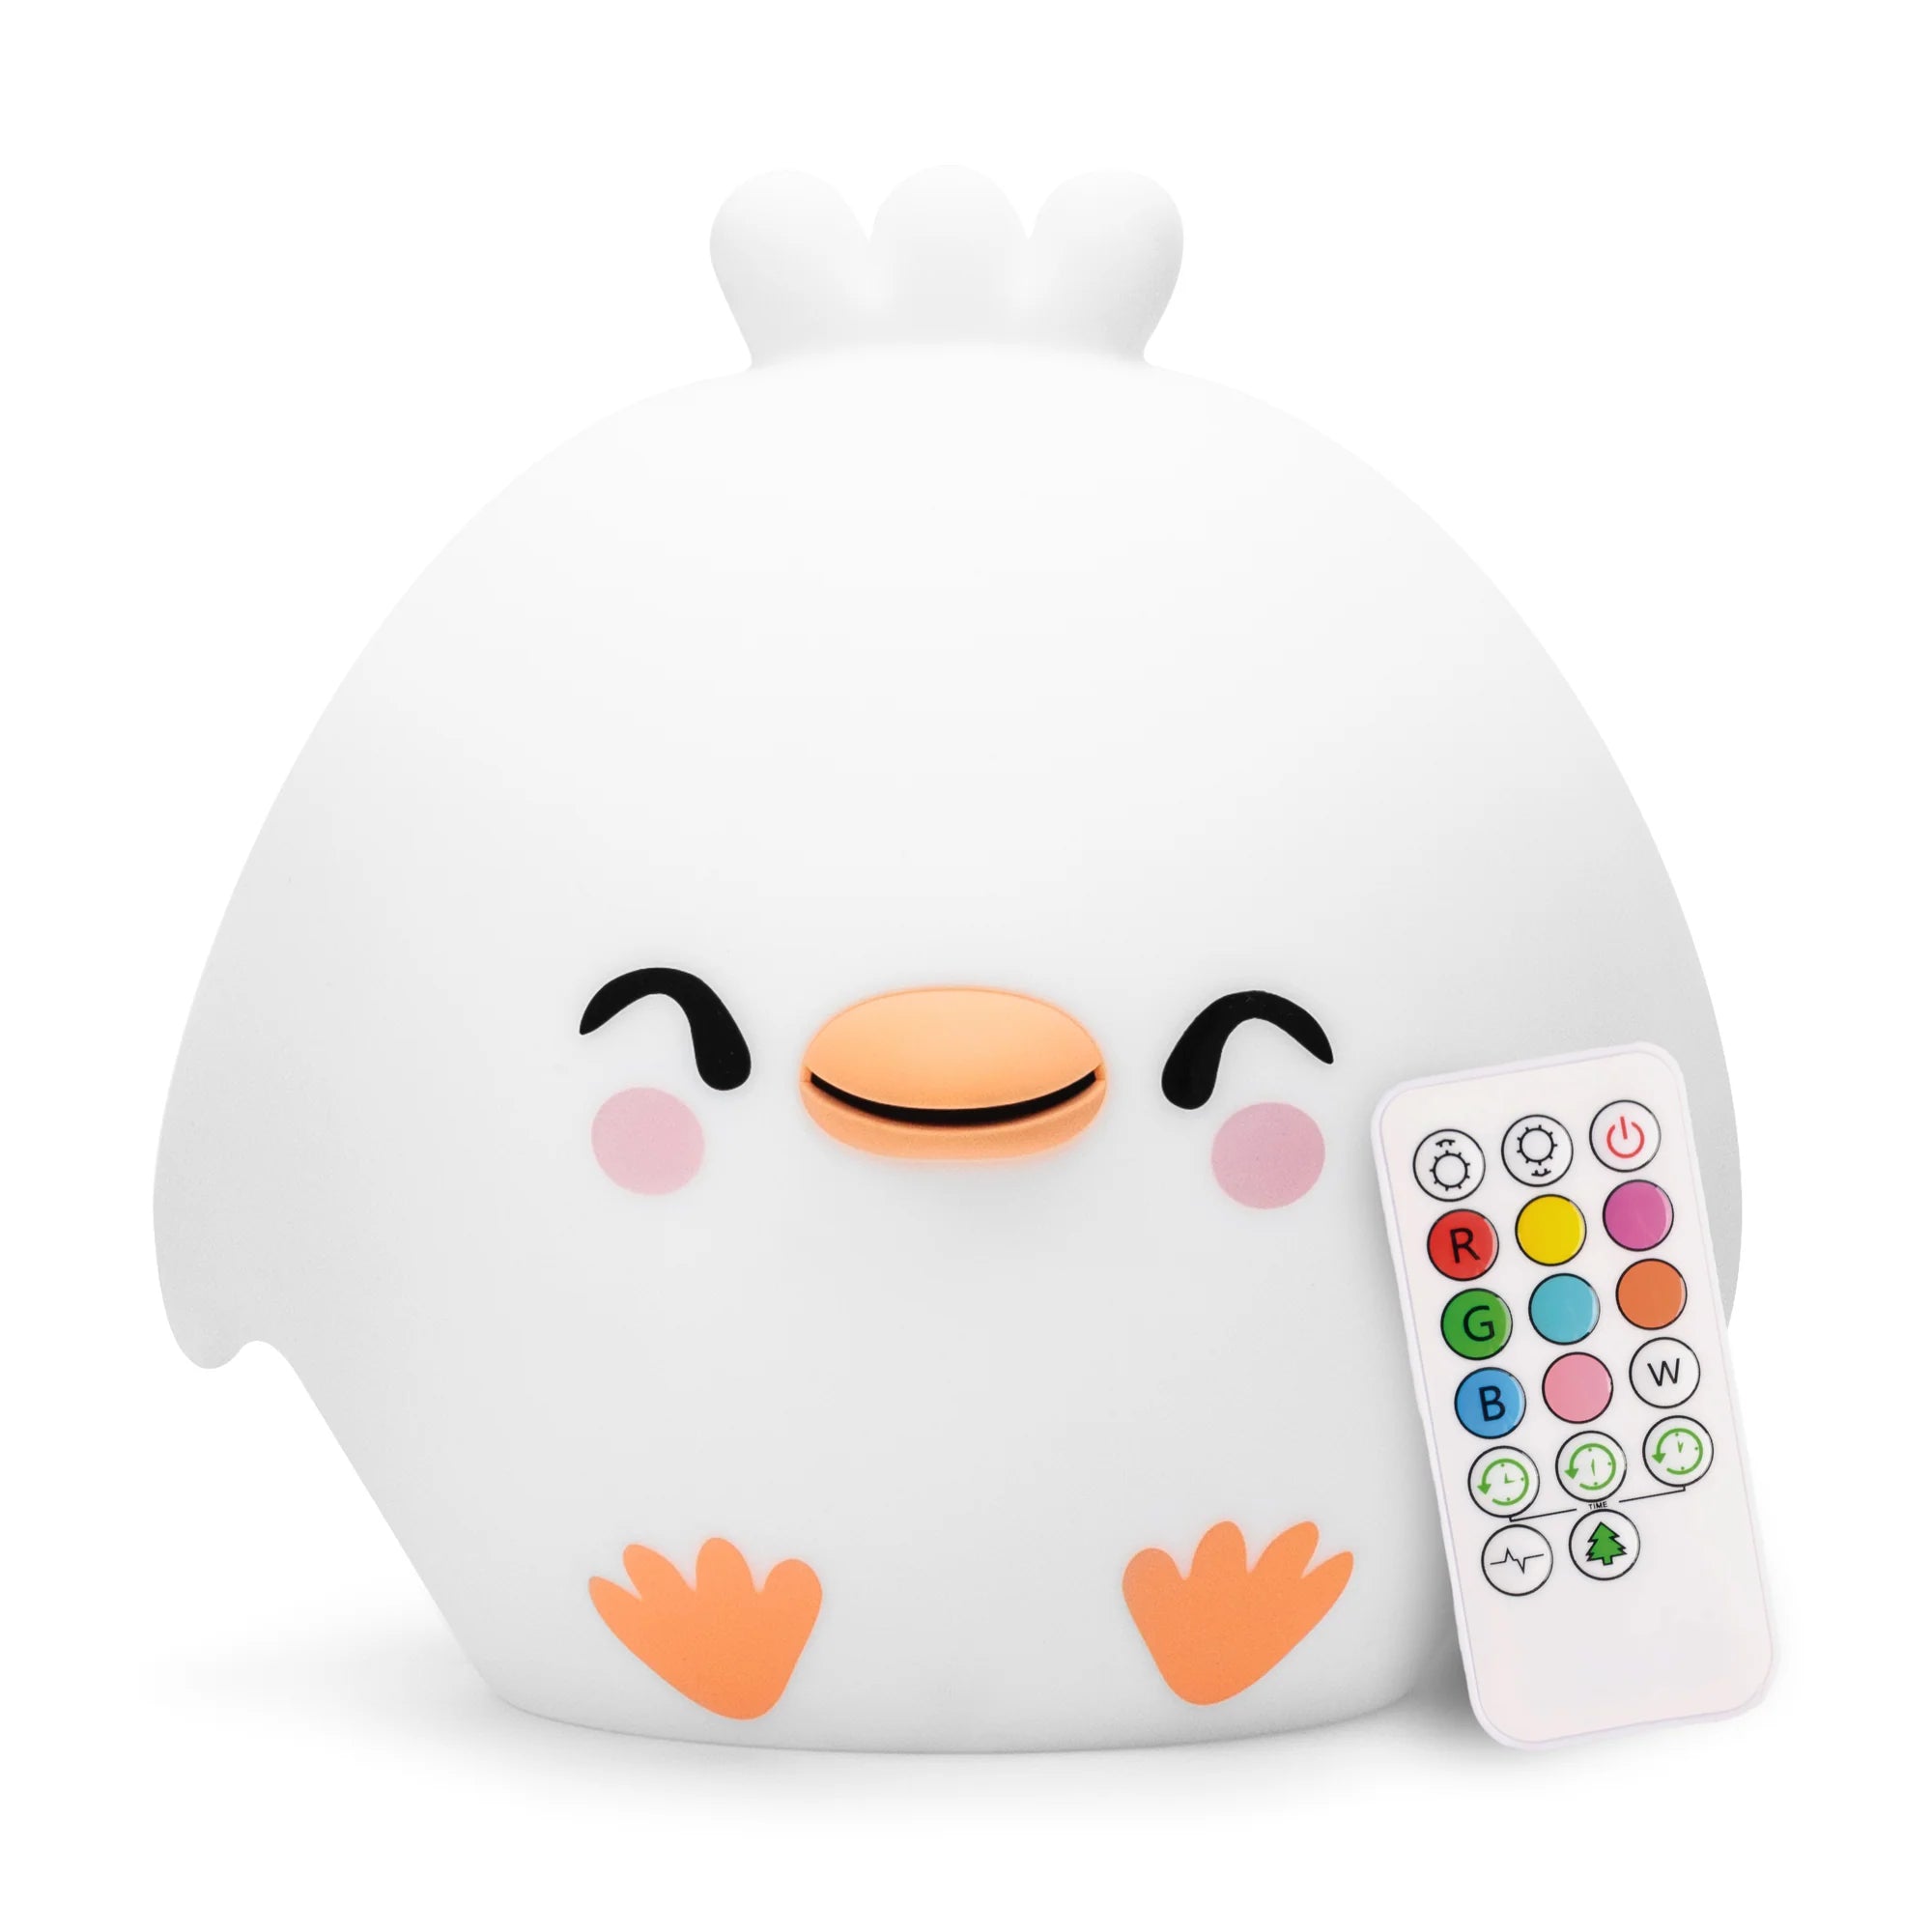 Lumipet Chick + Remote